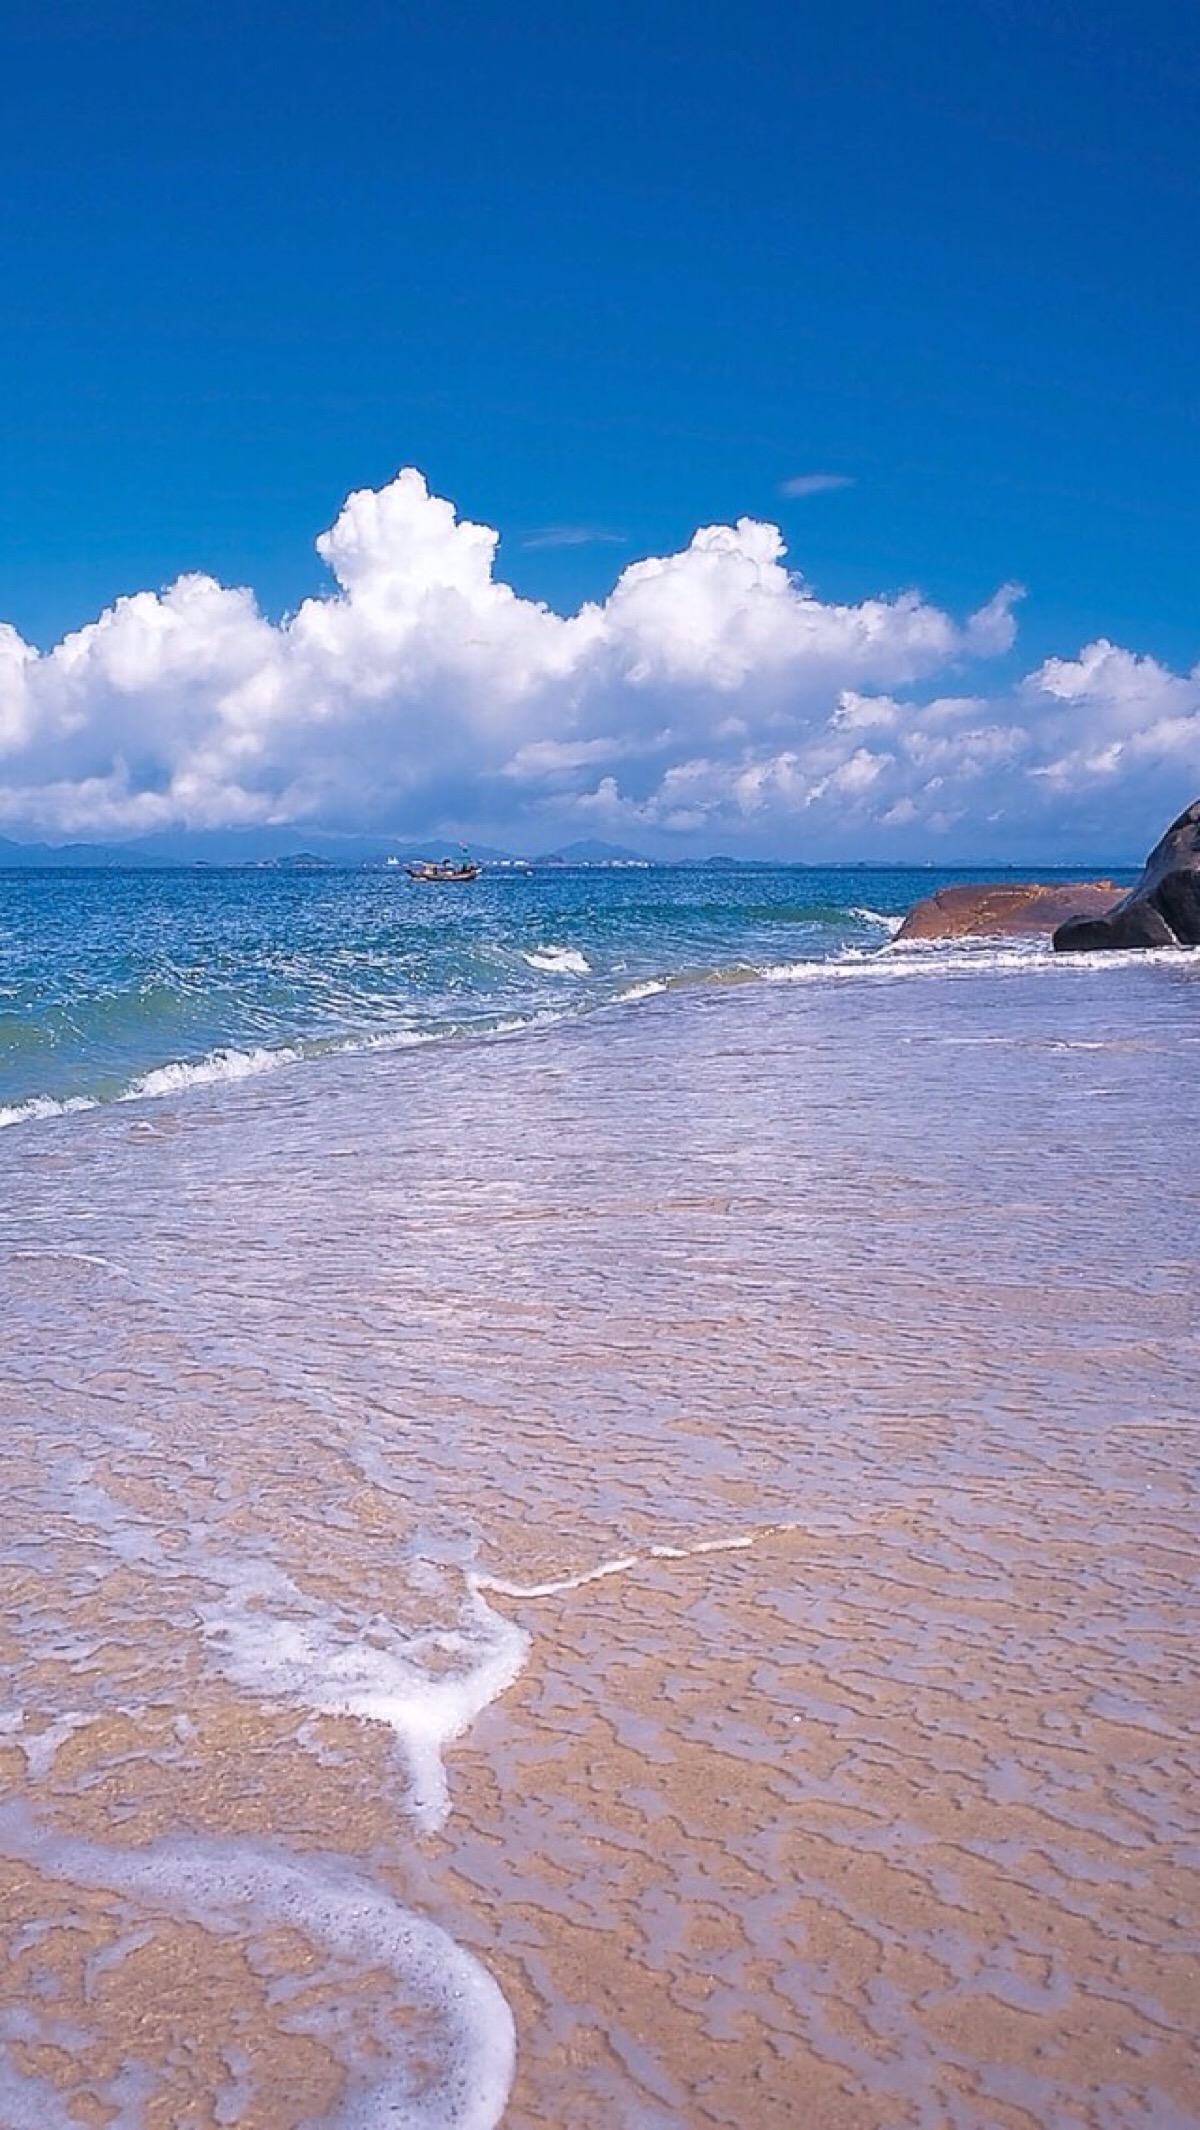 唯美自然风景蓝天碧海海洋沙滩唯美风景 堆糖 美图壁纸兴趣社区